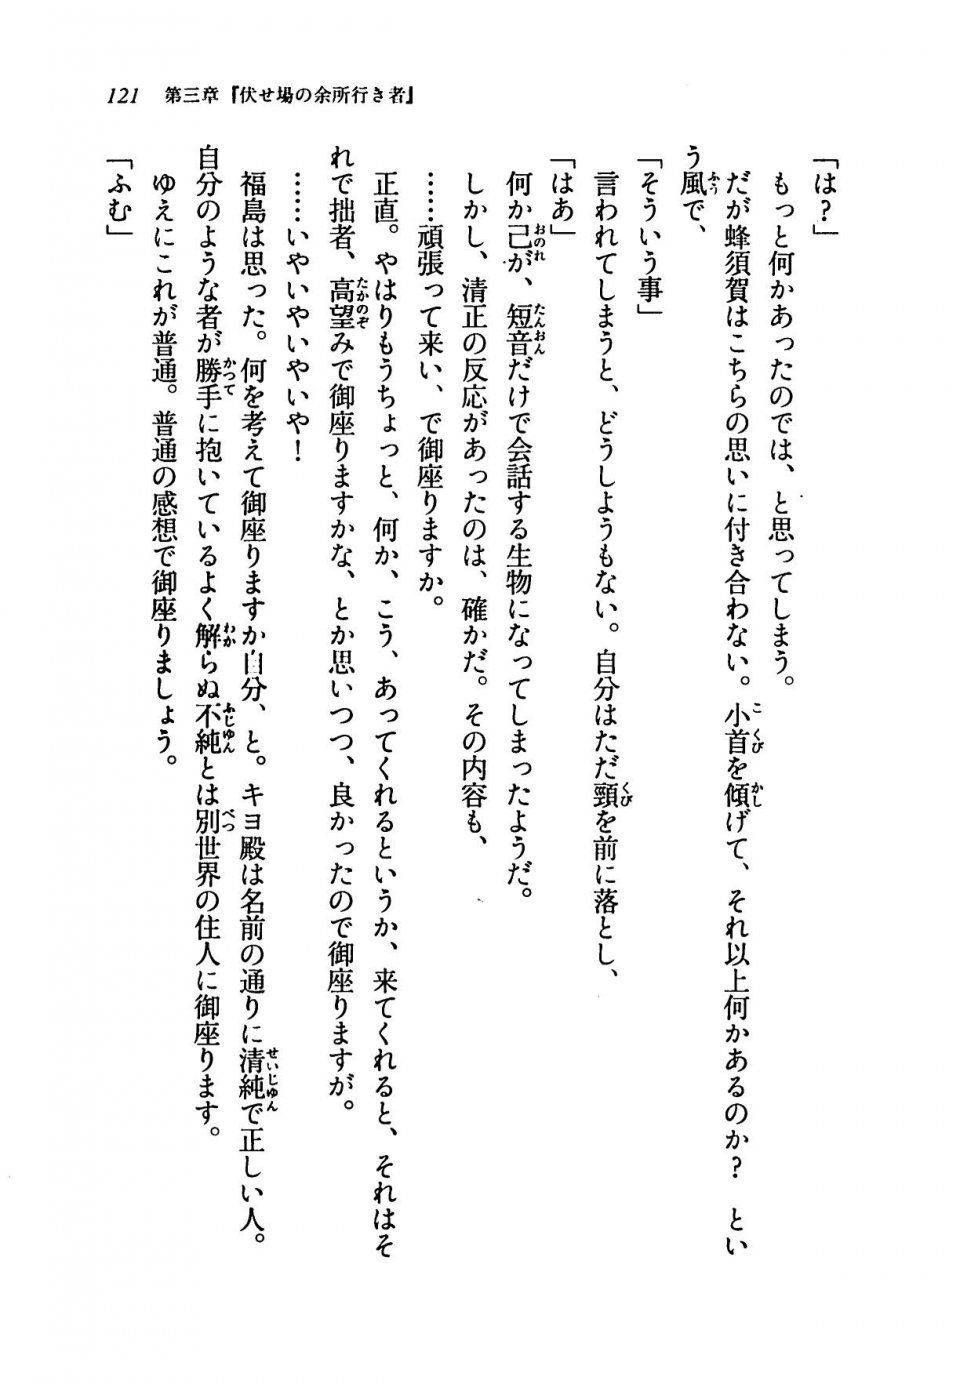 Kyoukai Senjou no Horizon LN Vol 19(8A) - Photo #121